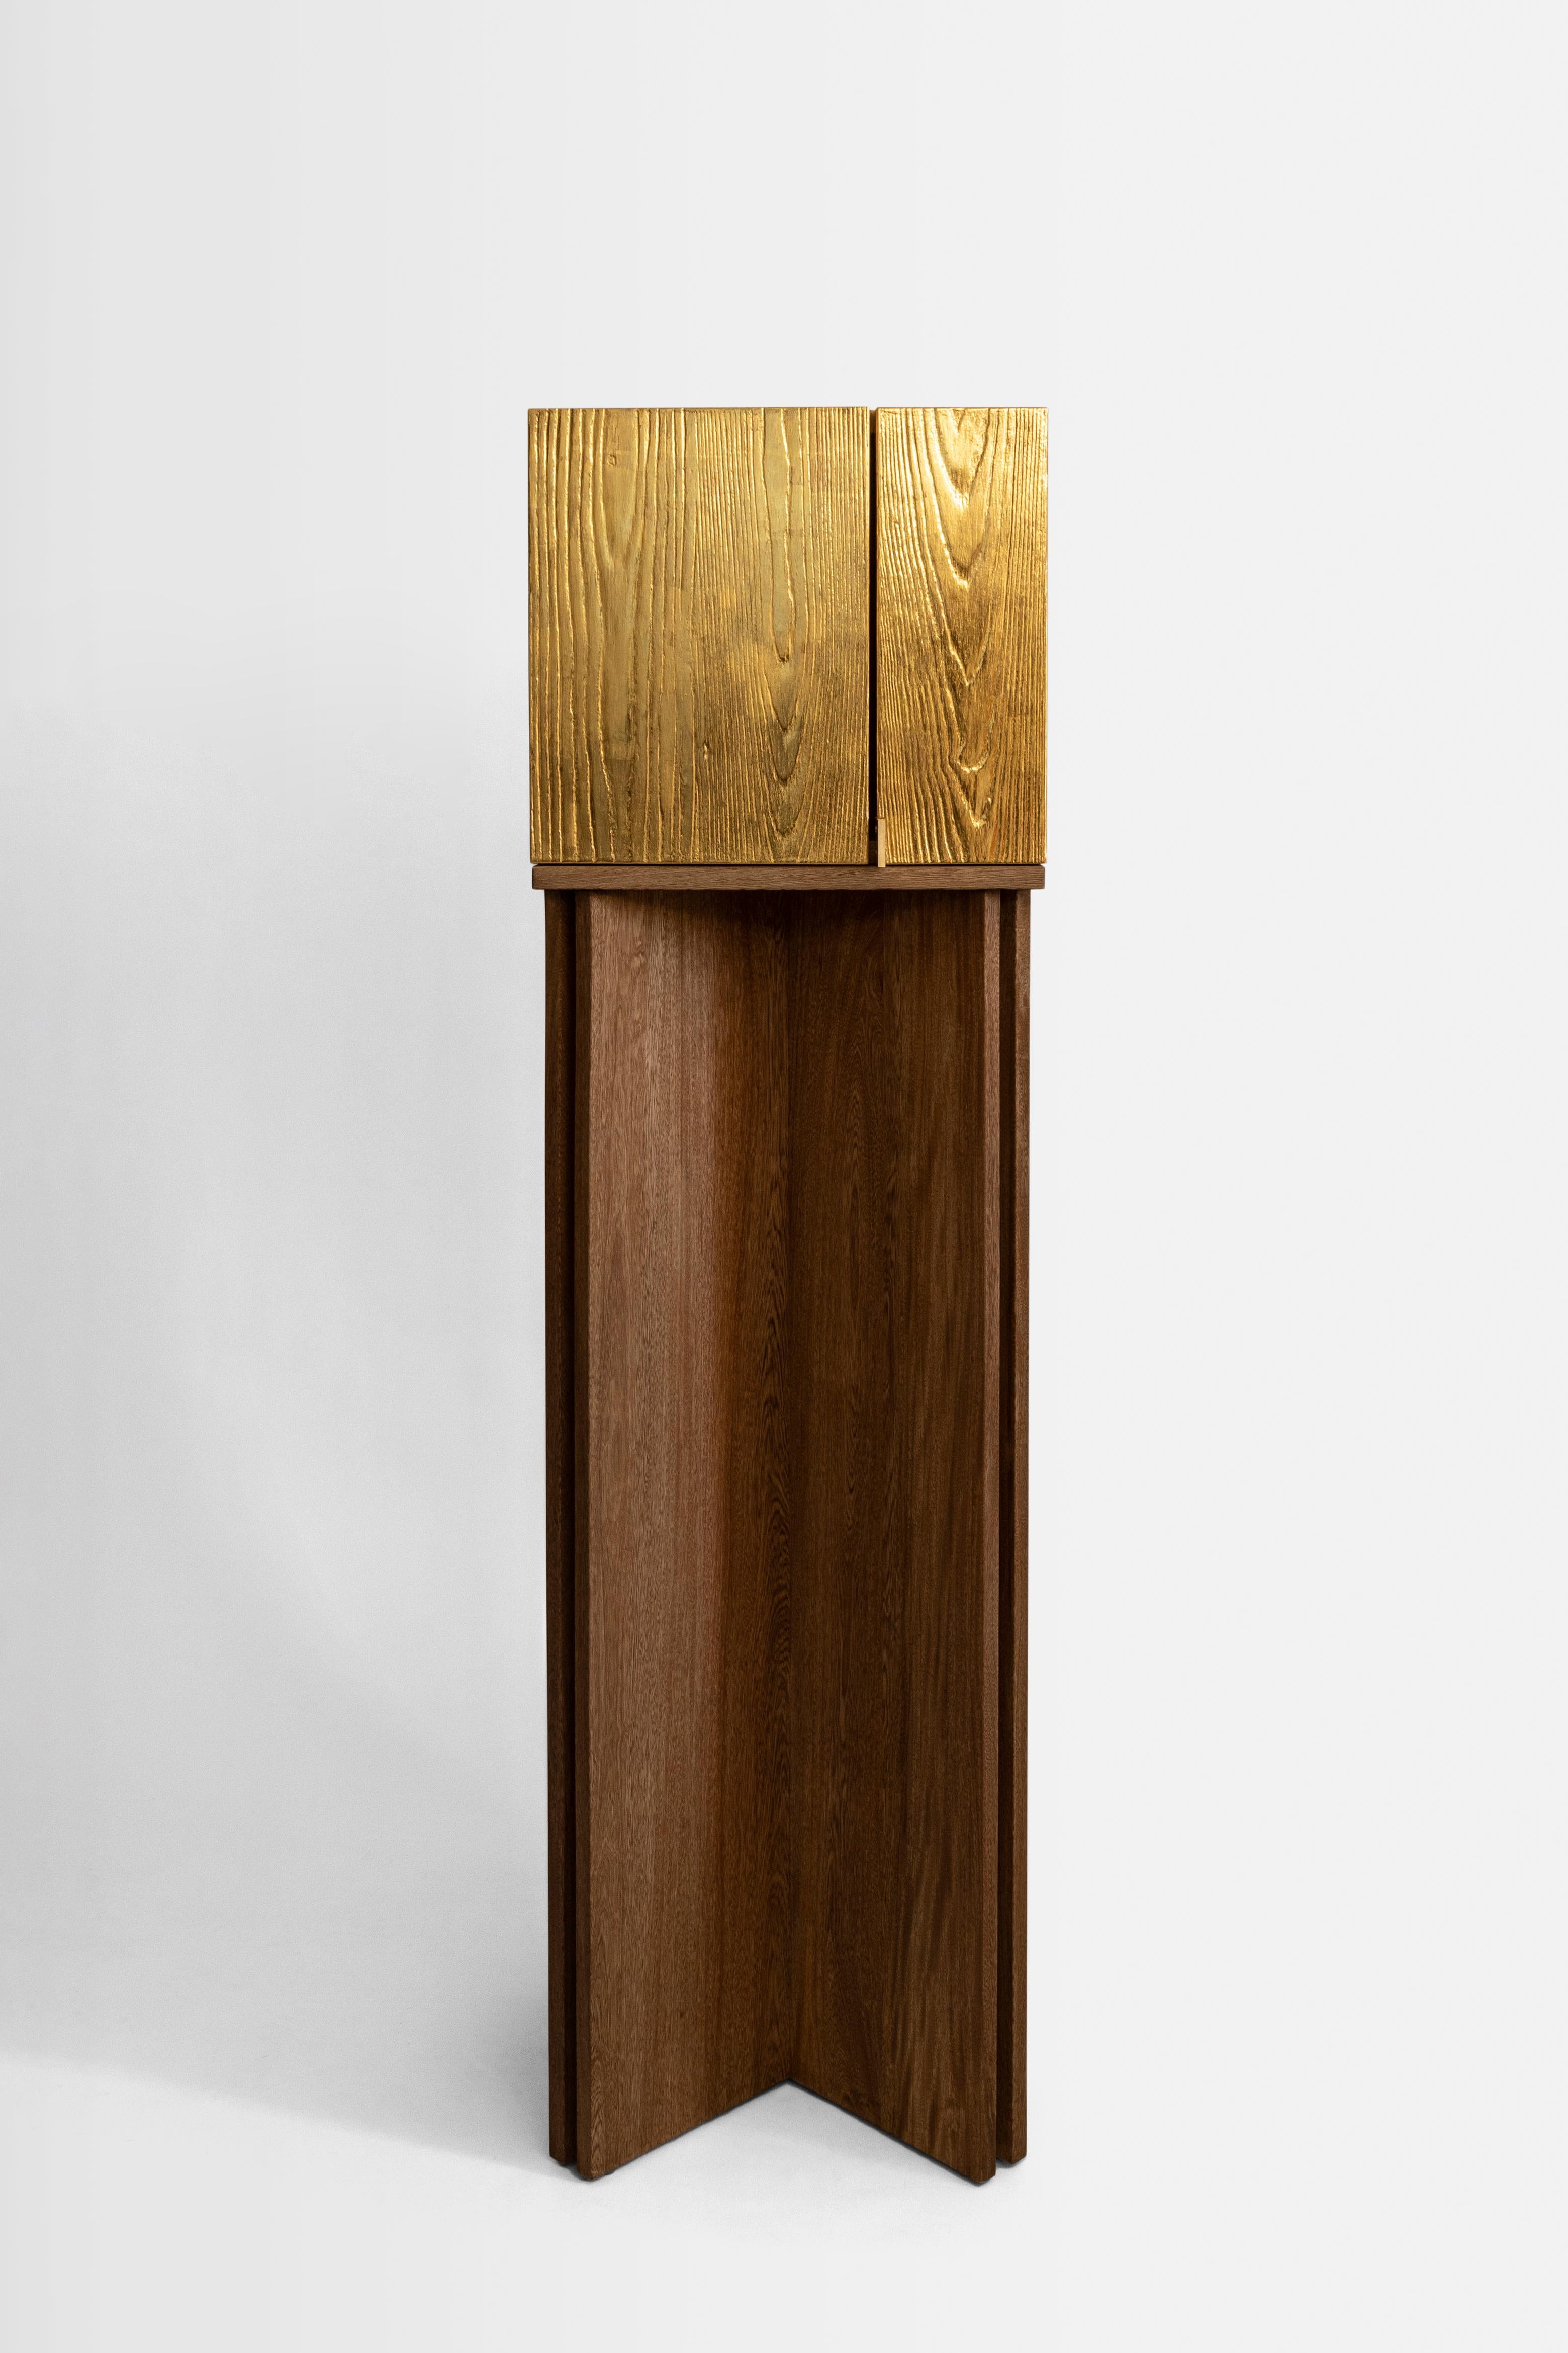 Les architectes Karla Vázquez de KV et Caterina Moretti de Peca ont collaboré pour créer The Aurum Cabinets, qui sont des œuvres sculpturales et des pièces uniques visant à ouvrir des dialogues honnêtes sur les objets les plus proches de